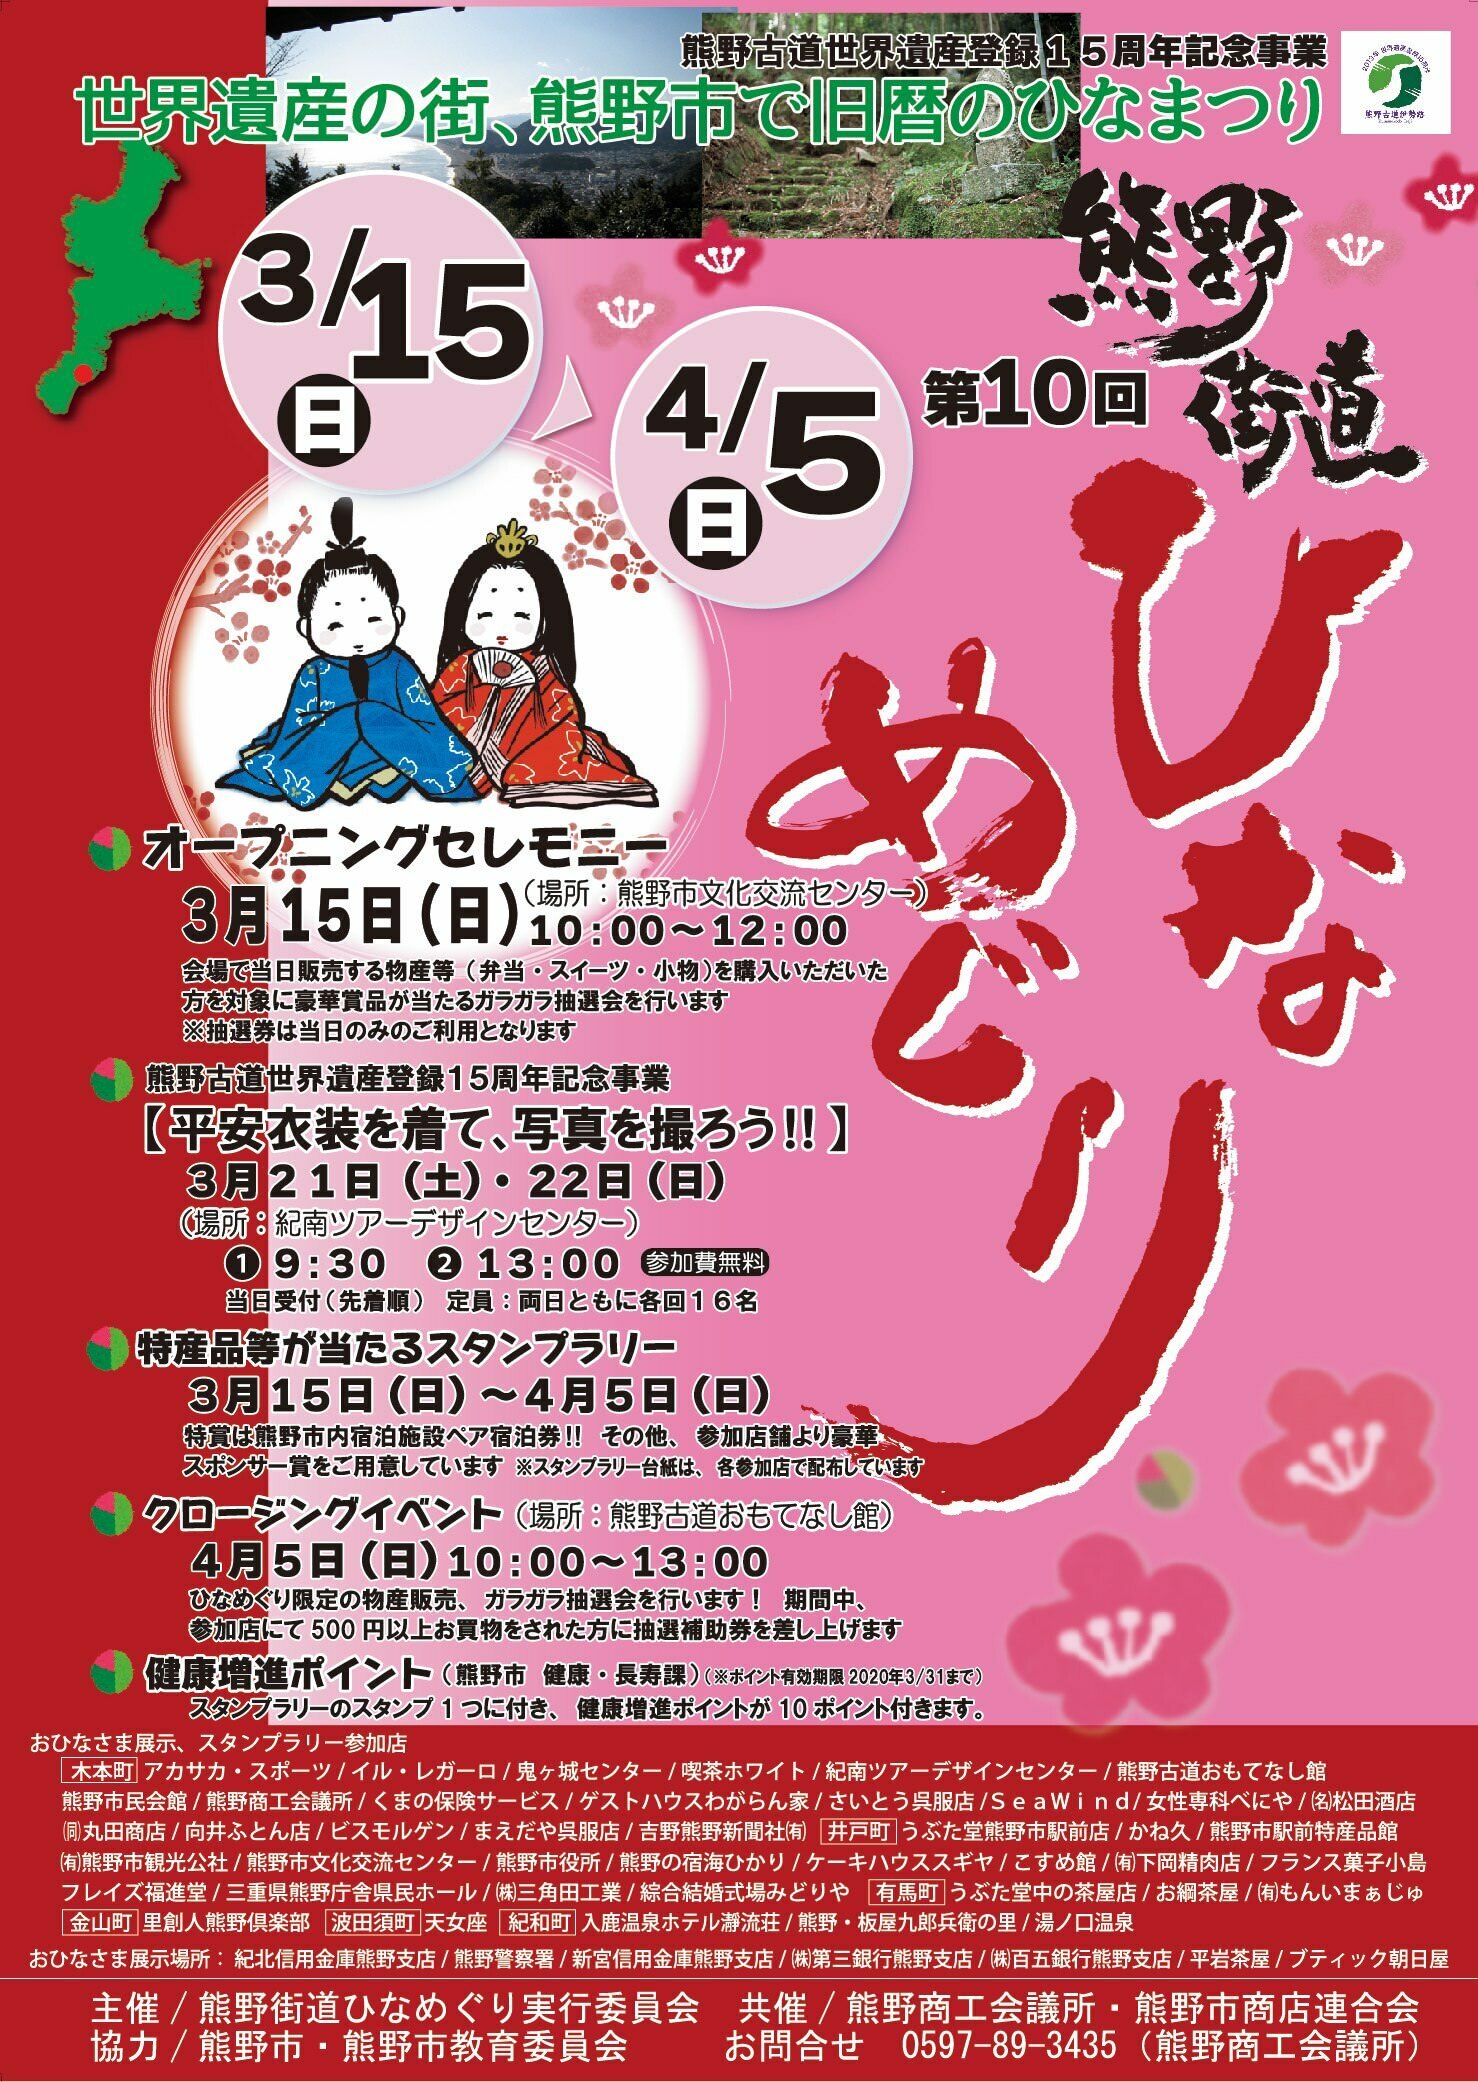 「アトレ五反田1・2」
3月26日(木) AM10:00　GRAND OPEN！